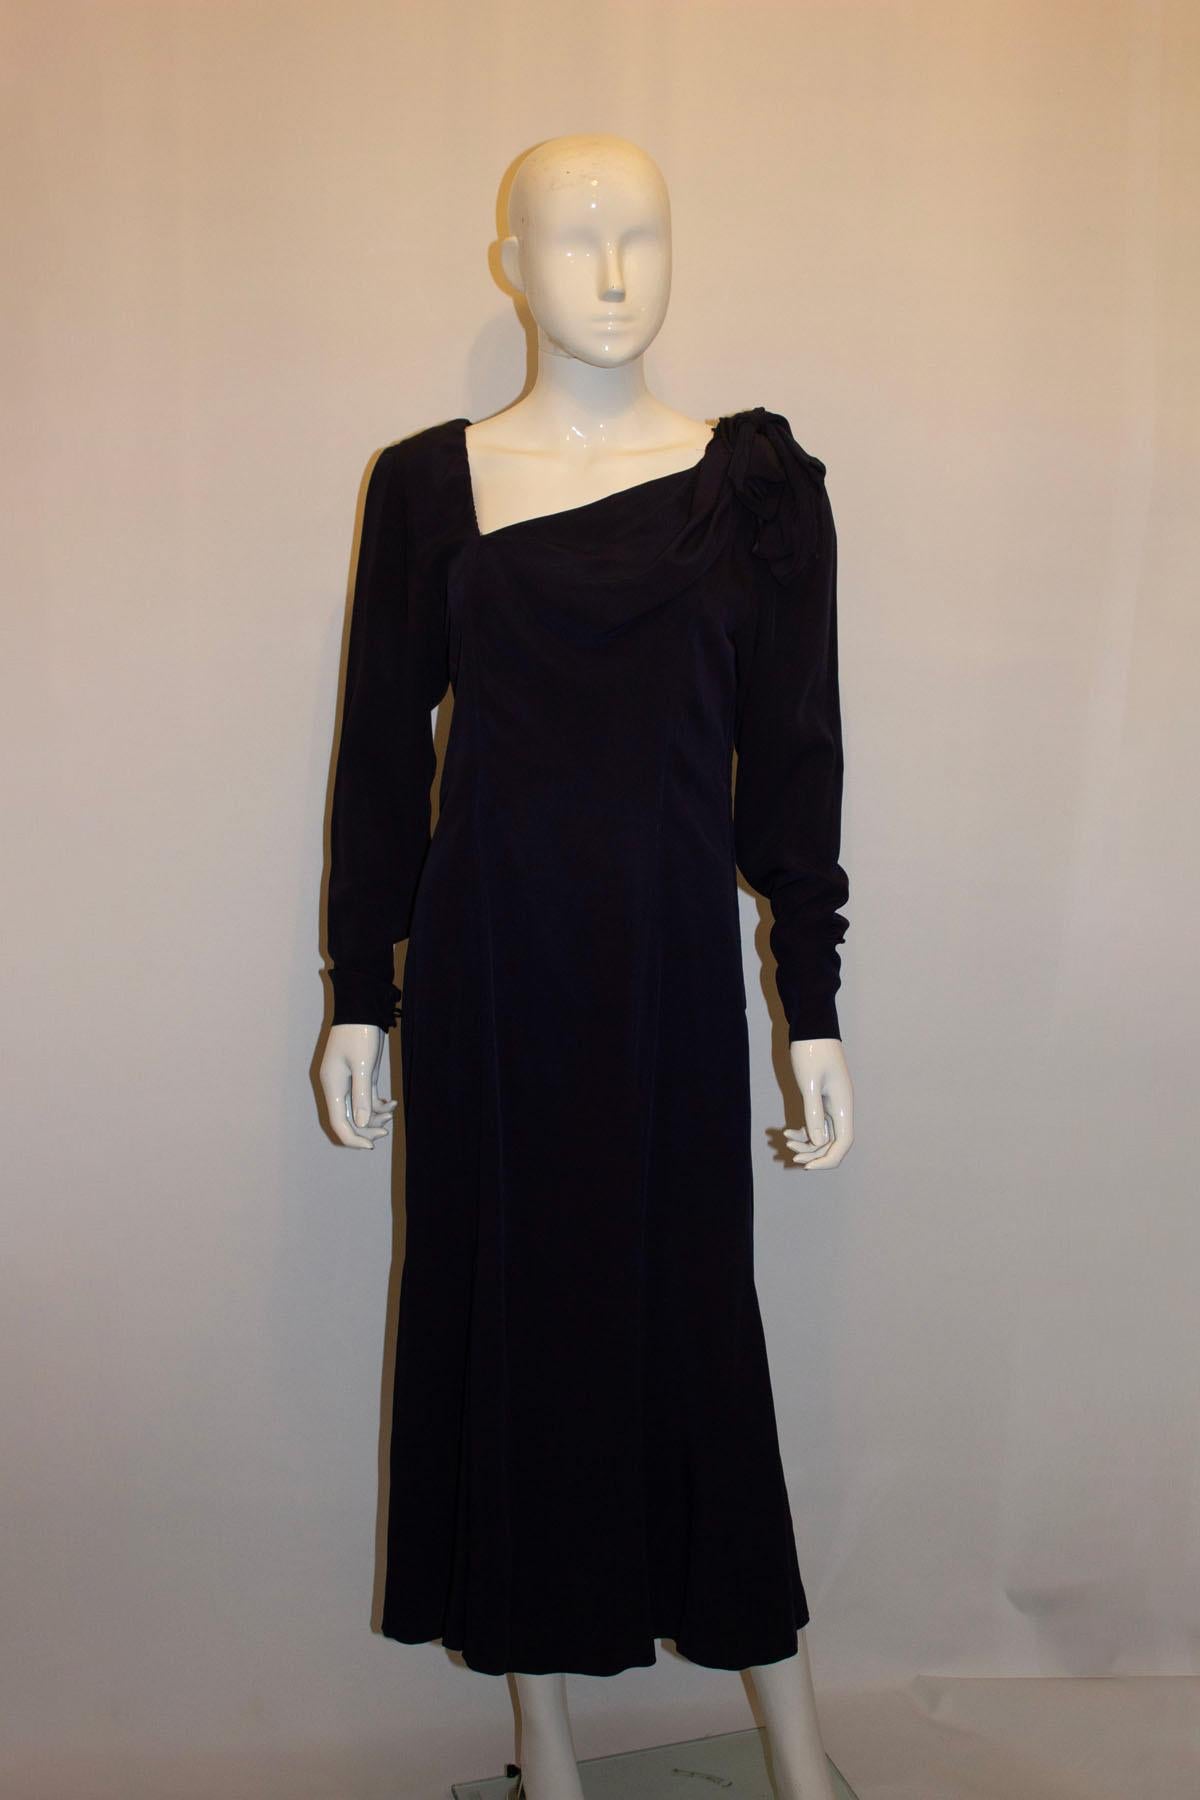 Une robe de soirée vintage du créateur français Gaston Jaunet qui fait tourner les têtes. D'un bleu profond, la robe présente une encolure intéressante avec des détails sur une épaule, une ouverture zippée sur le côté et des poignets